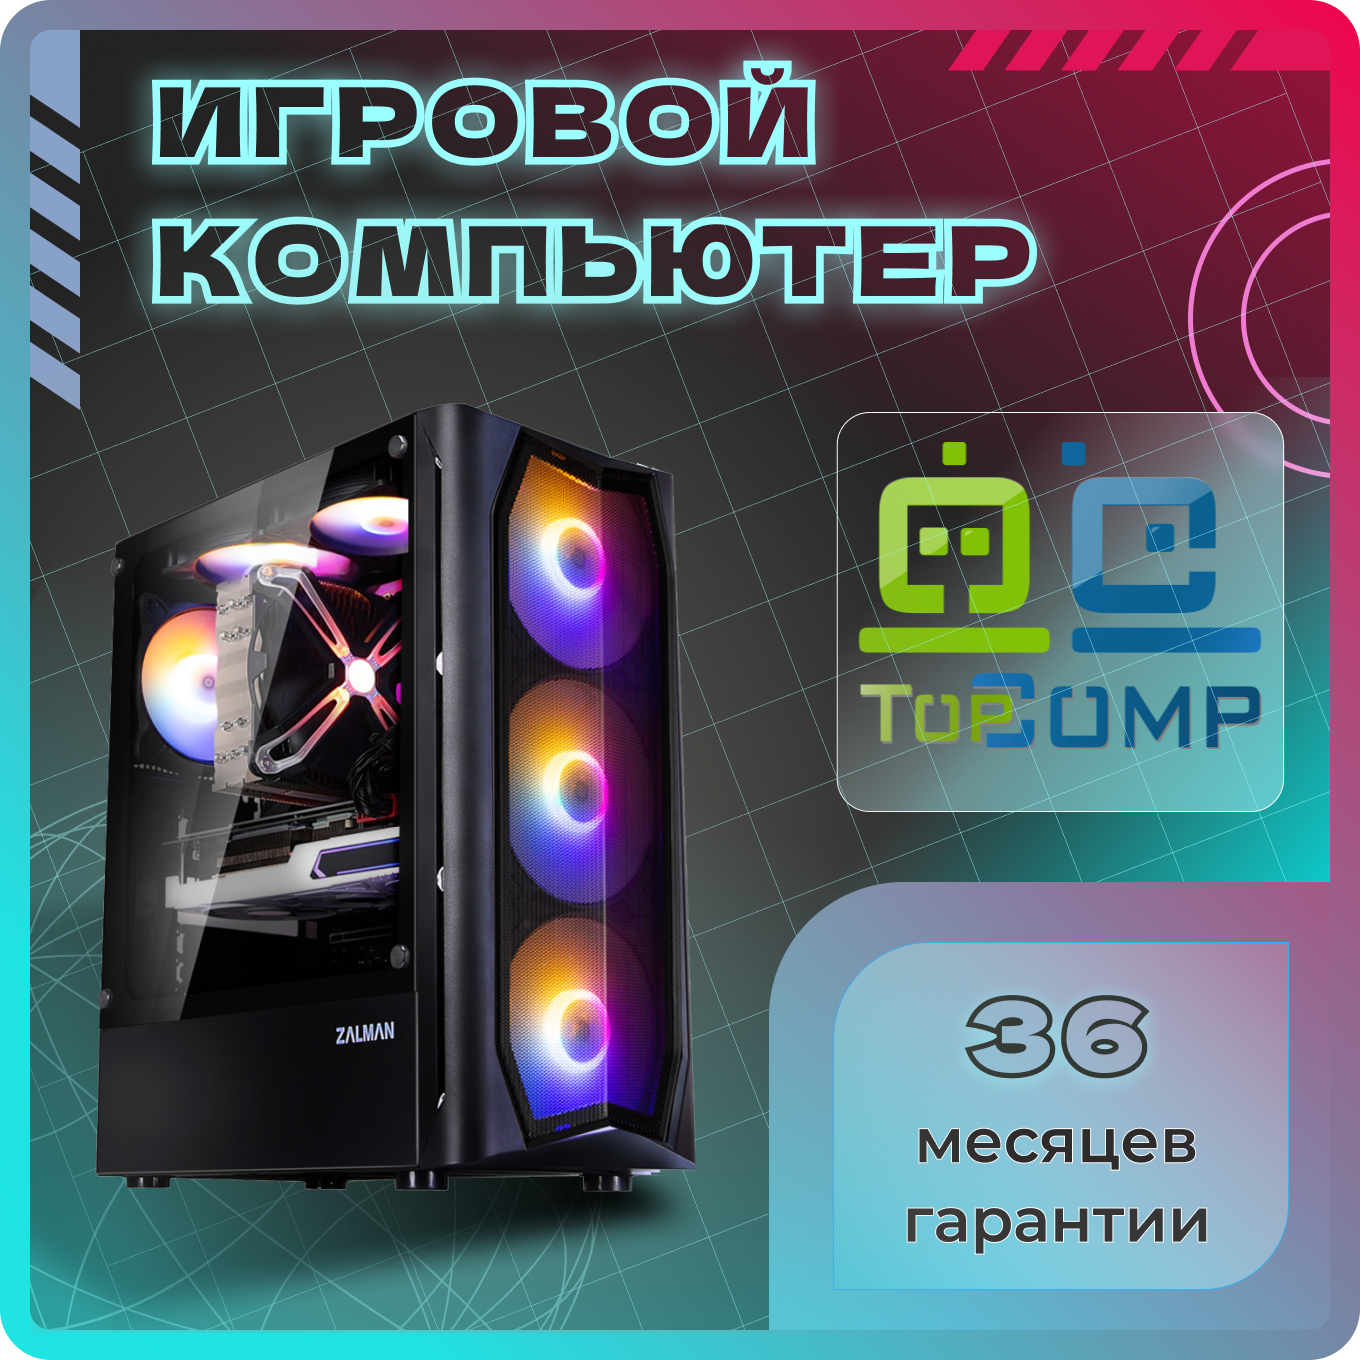 ПК для игр TopComp MG 51988346 (Intel Core i5 11400F 2.6 ГГц, RAM 8 Гб, 1000 Гб HDD, NVIDIA GeForce RTX 2060 SUPER 8 Гб, Без ОС)